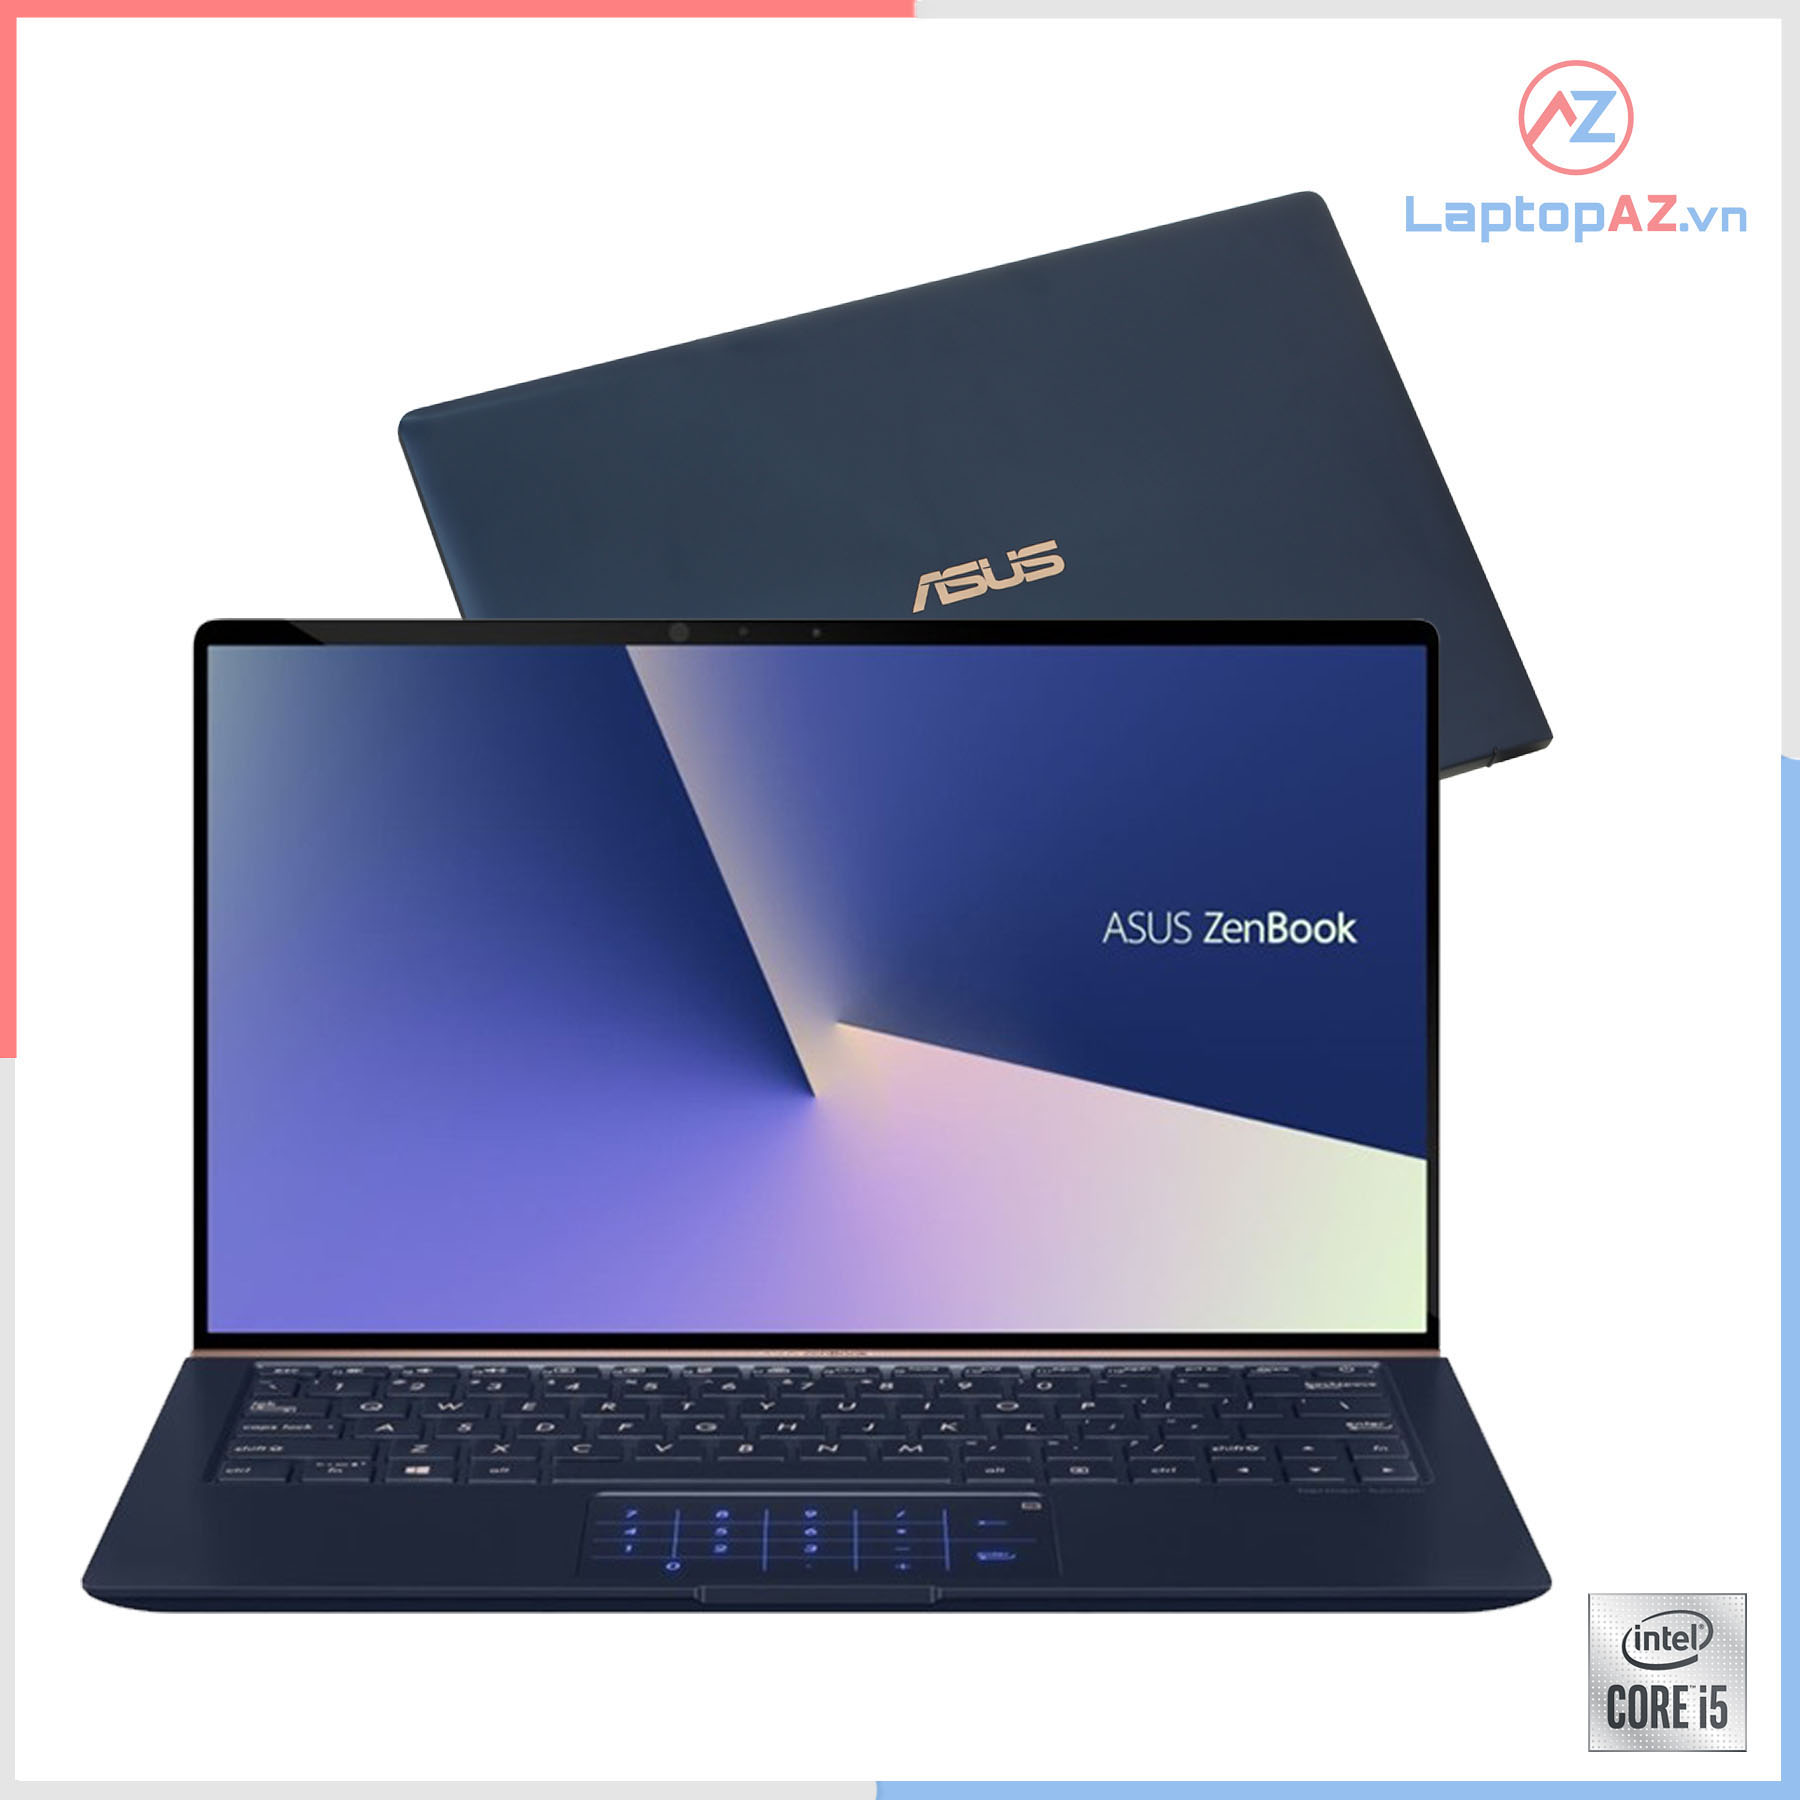 Laptop cũ ASUS Zenbook 14 UX433FA-A6061T (i5-8265U, 8GB, 256GB, 14' FHD IPS)